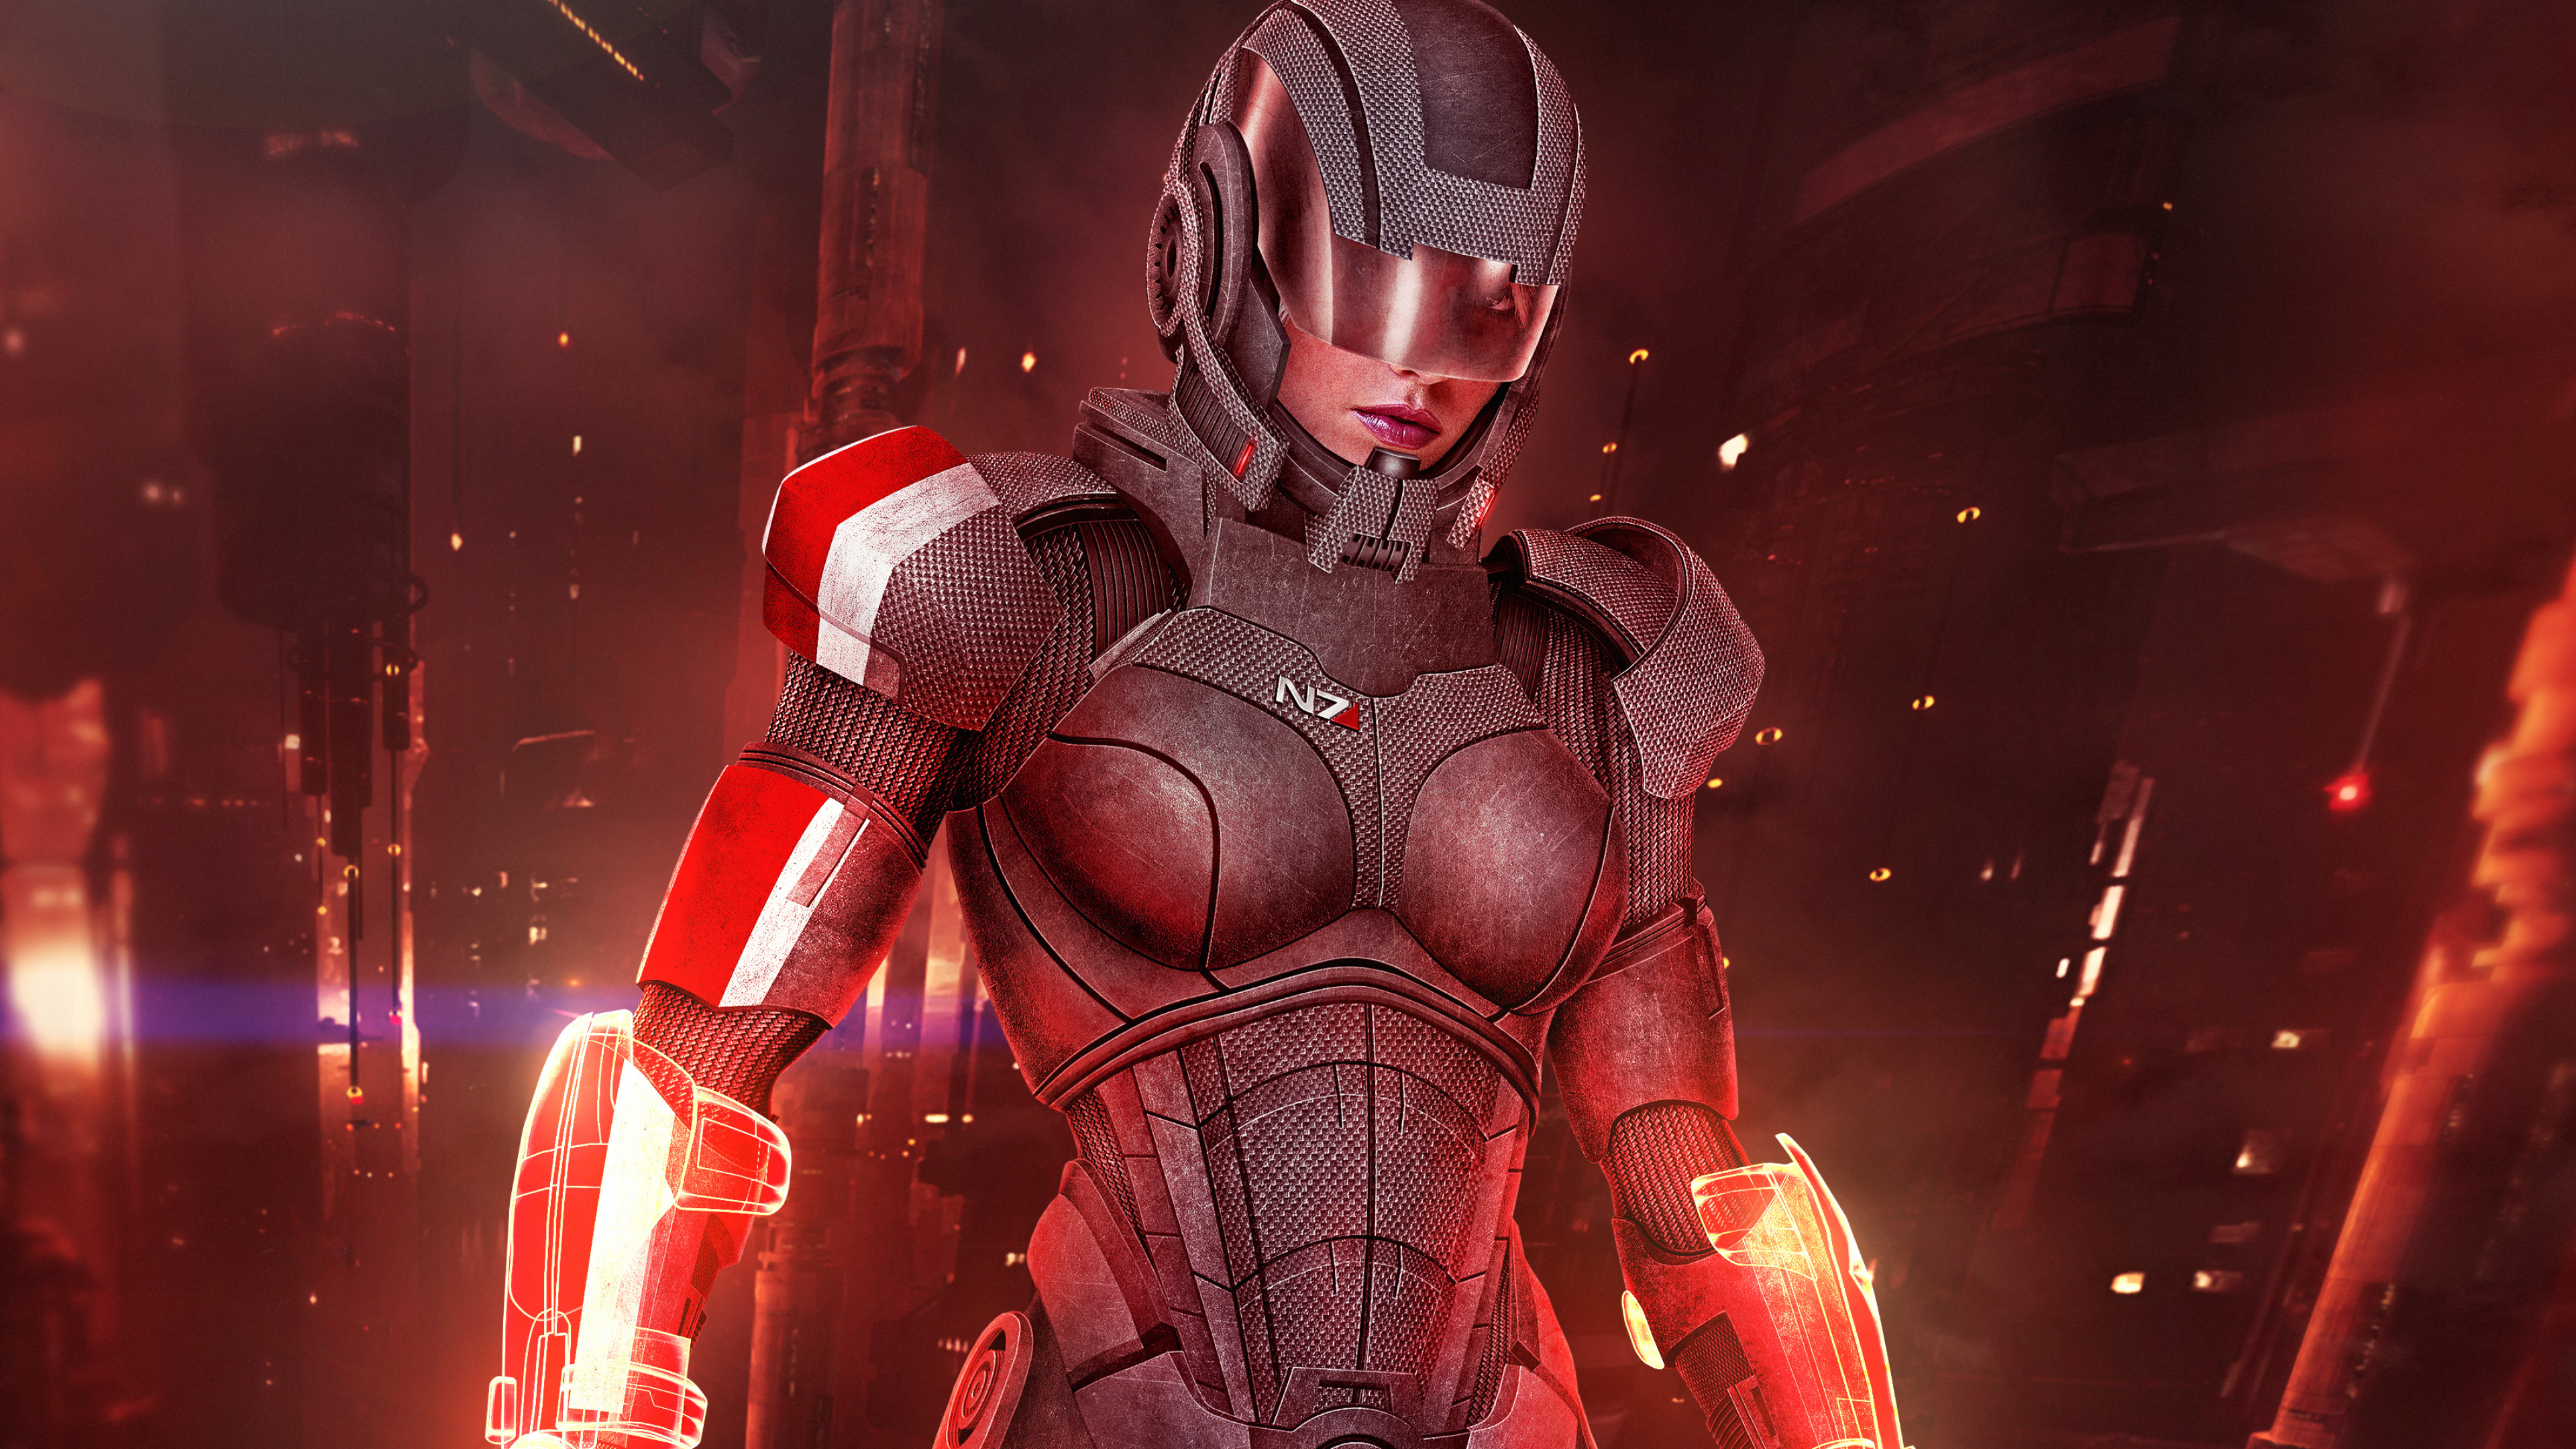 Mass Effect 3: Omega, Shepard and Femshep, Stunning 4K wallpapers, Great visuals, 3840x2160 4K Desktop